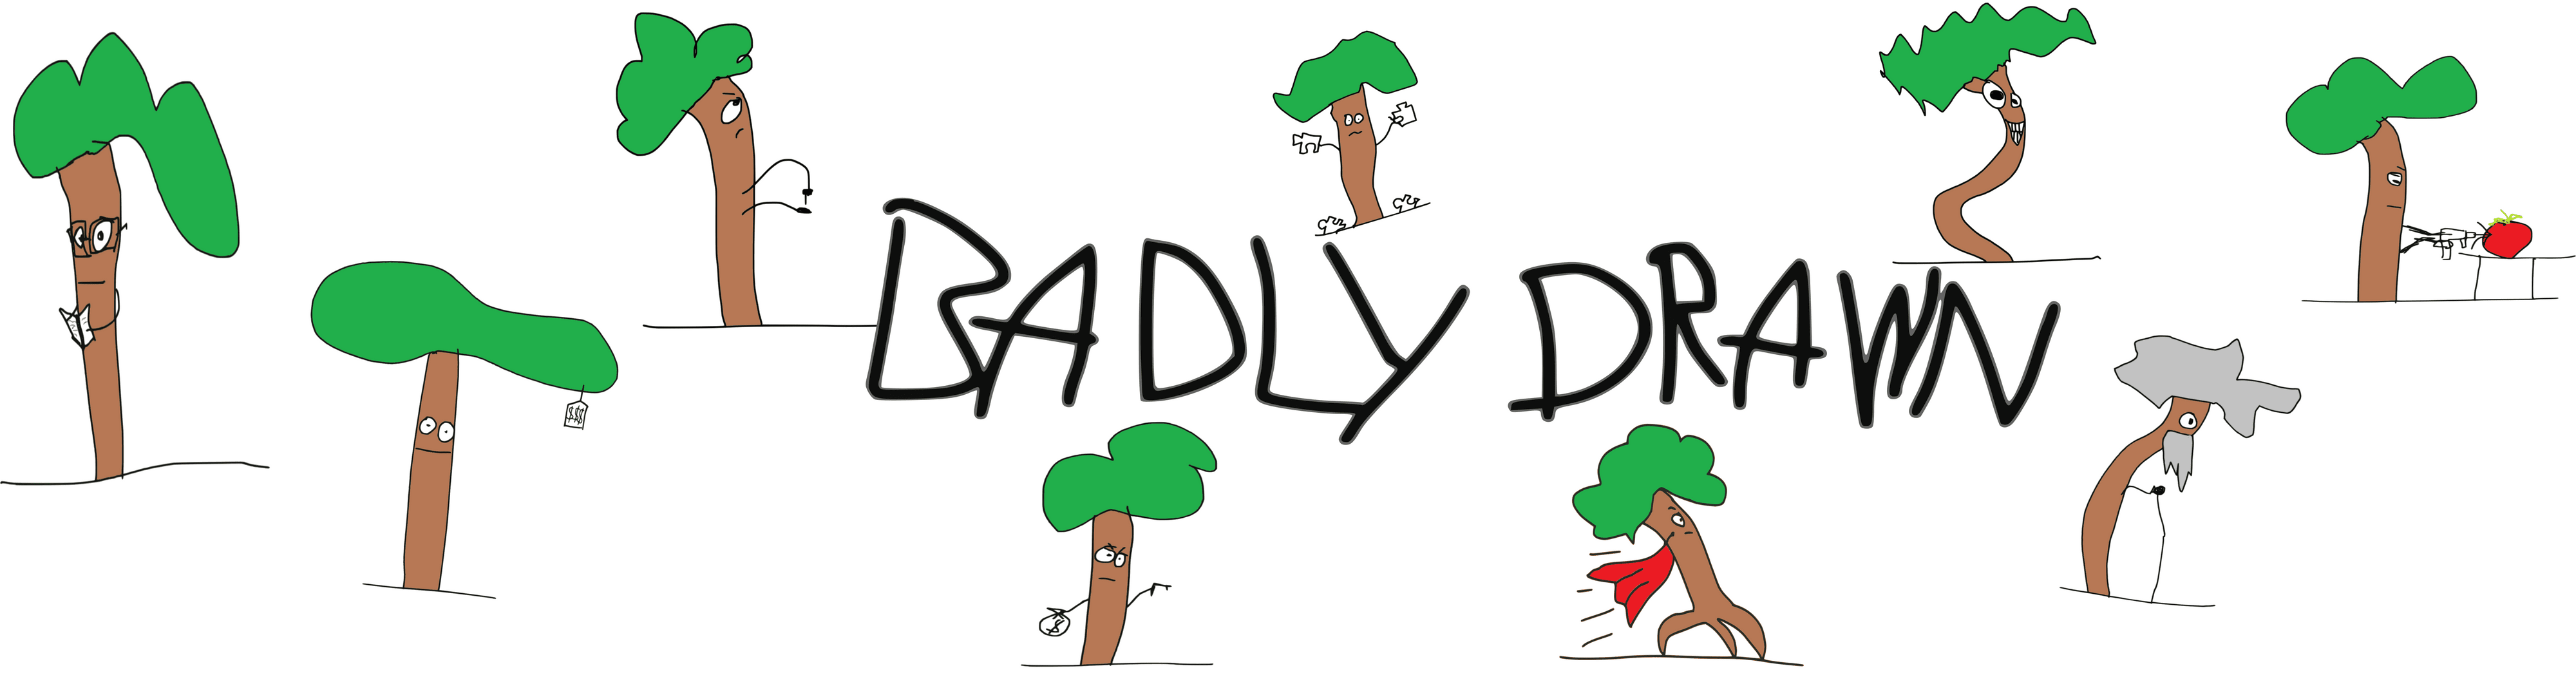 BadlyDrawn bannière